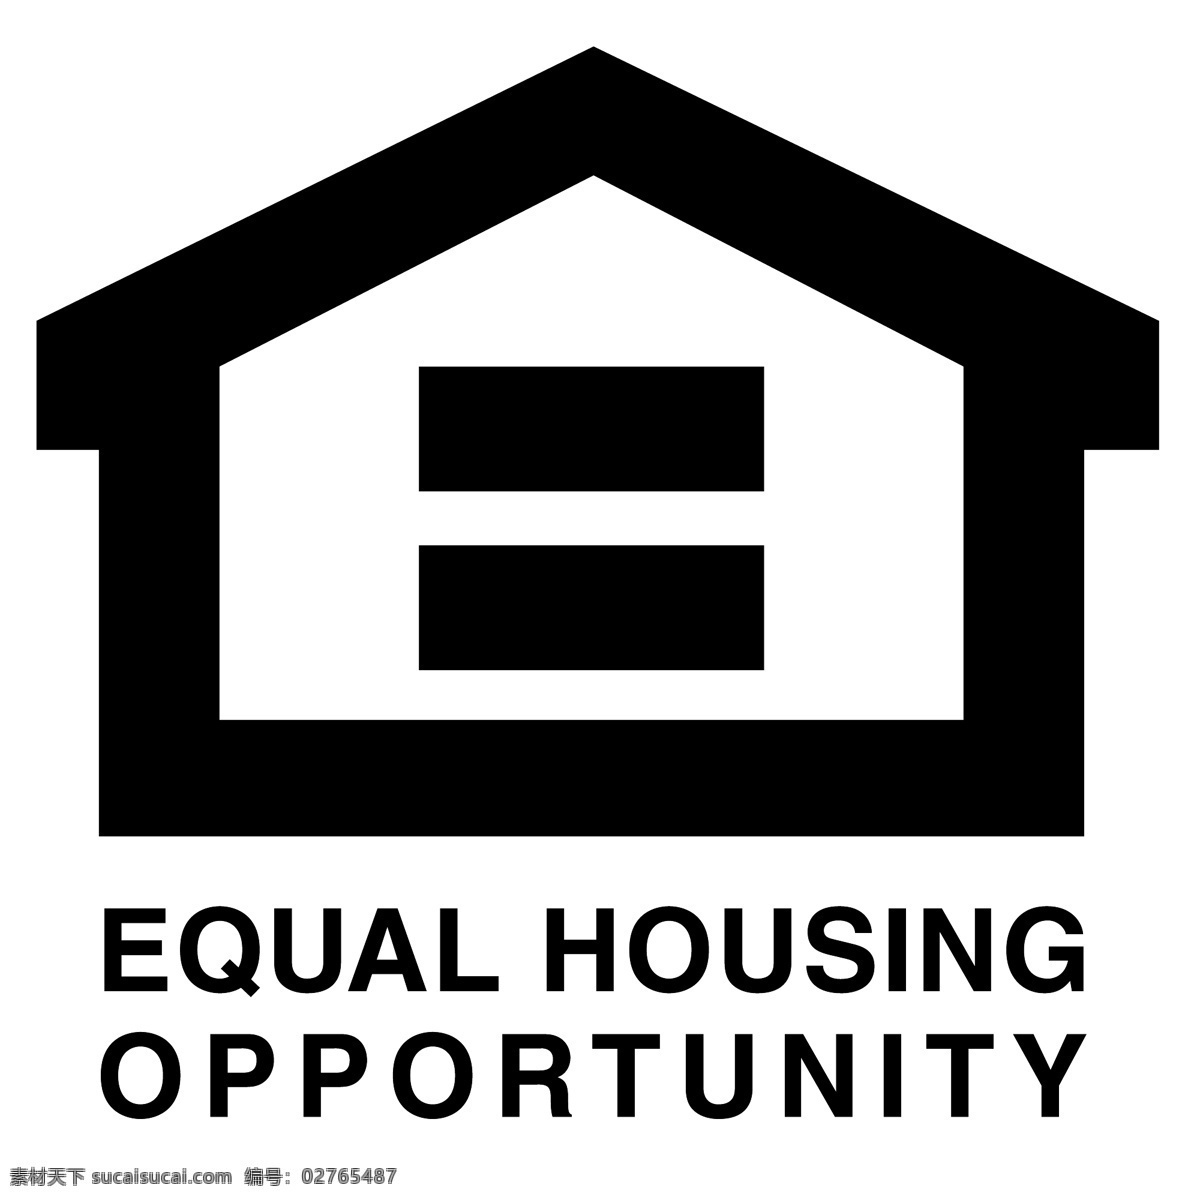 公平 住房 机会 相等的 平等的住房 住房的机会 机会均等 平等 标志 向量 相等 矢量图 建筑家居